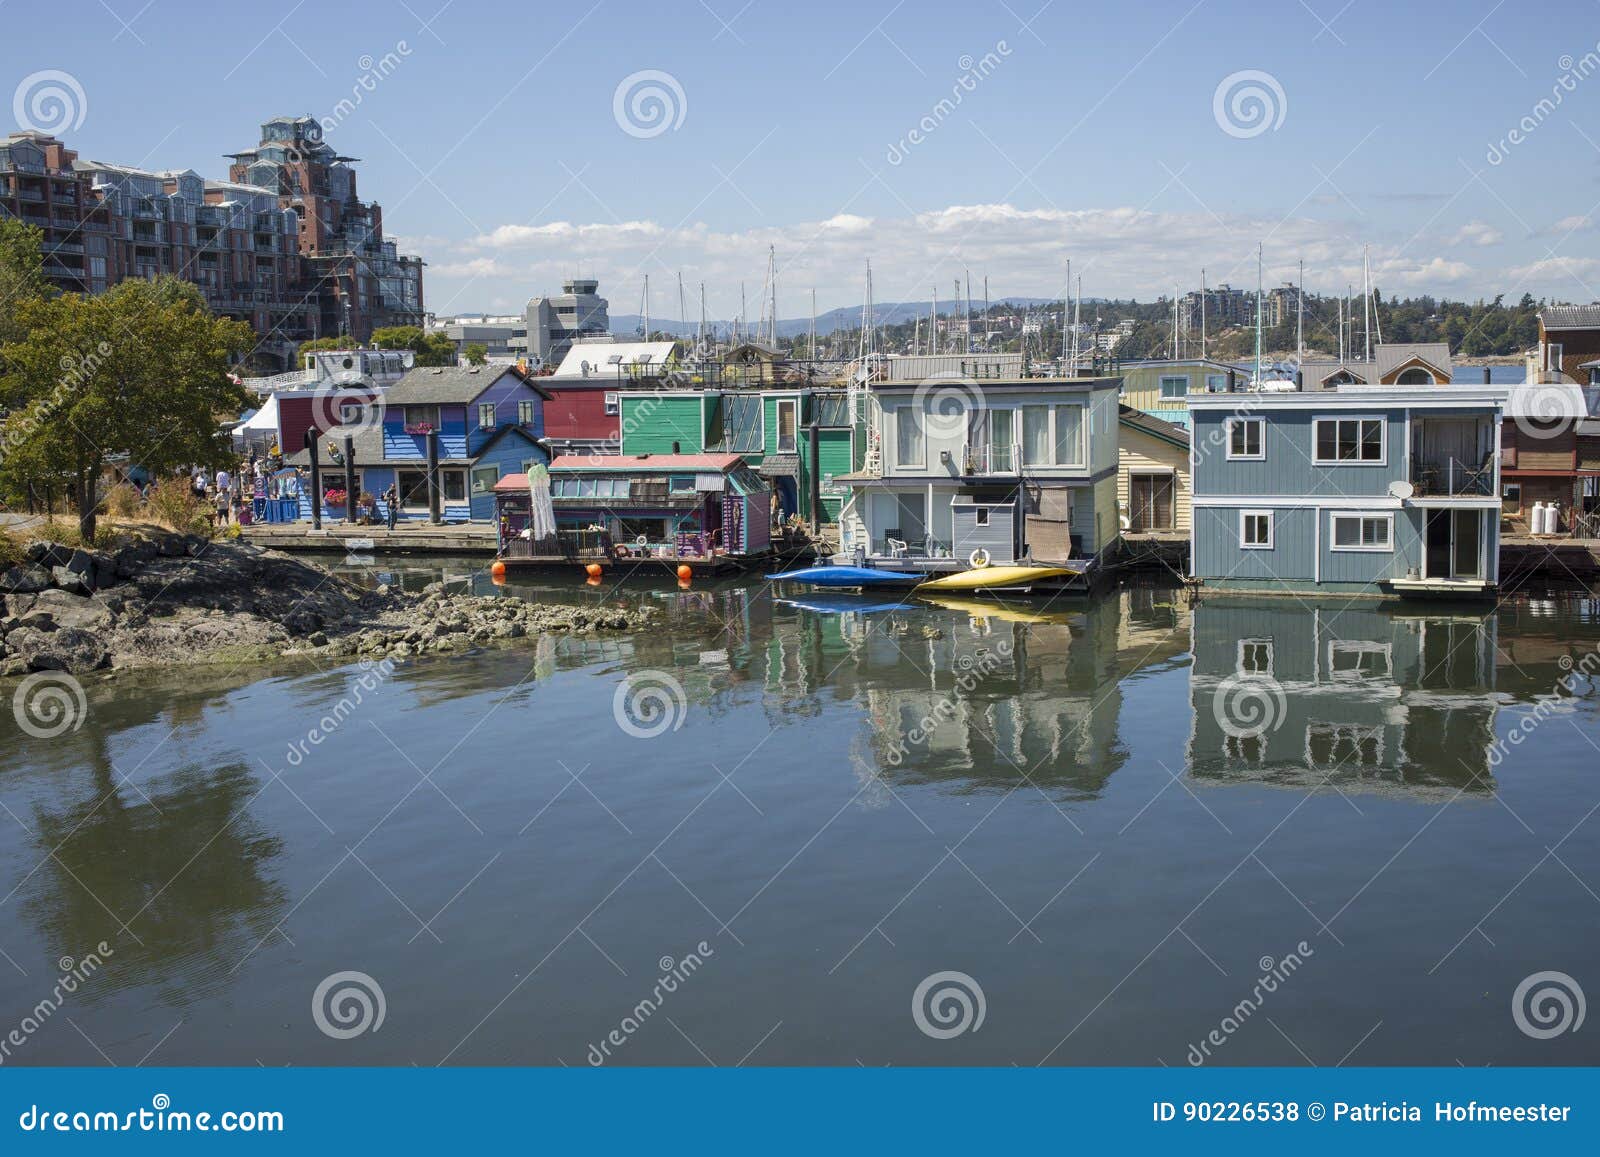 Färgrika husbåtar i Victoria, Kanada. Sväva den hem- byn med färgrika husbåtar på den inre hamnen, Victoria British Columbia Canada Pacific har nordvästligt område att sväva hem, fartyg, pir och restauranger